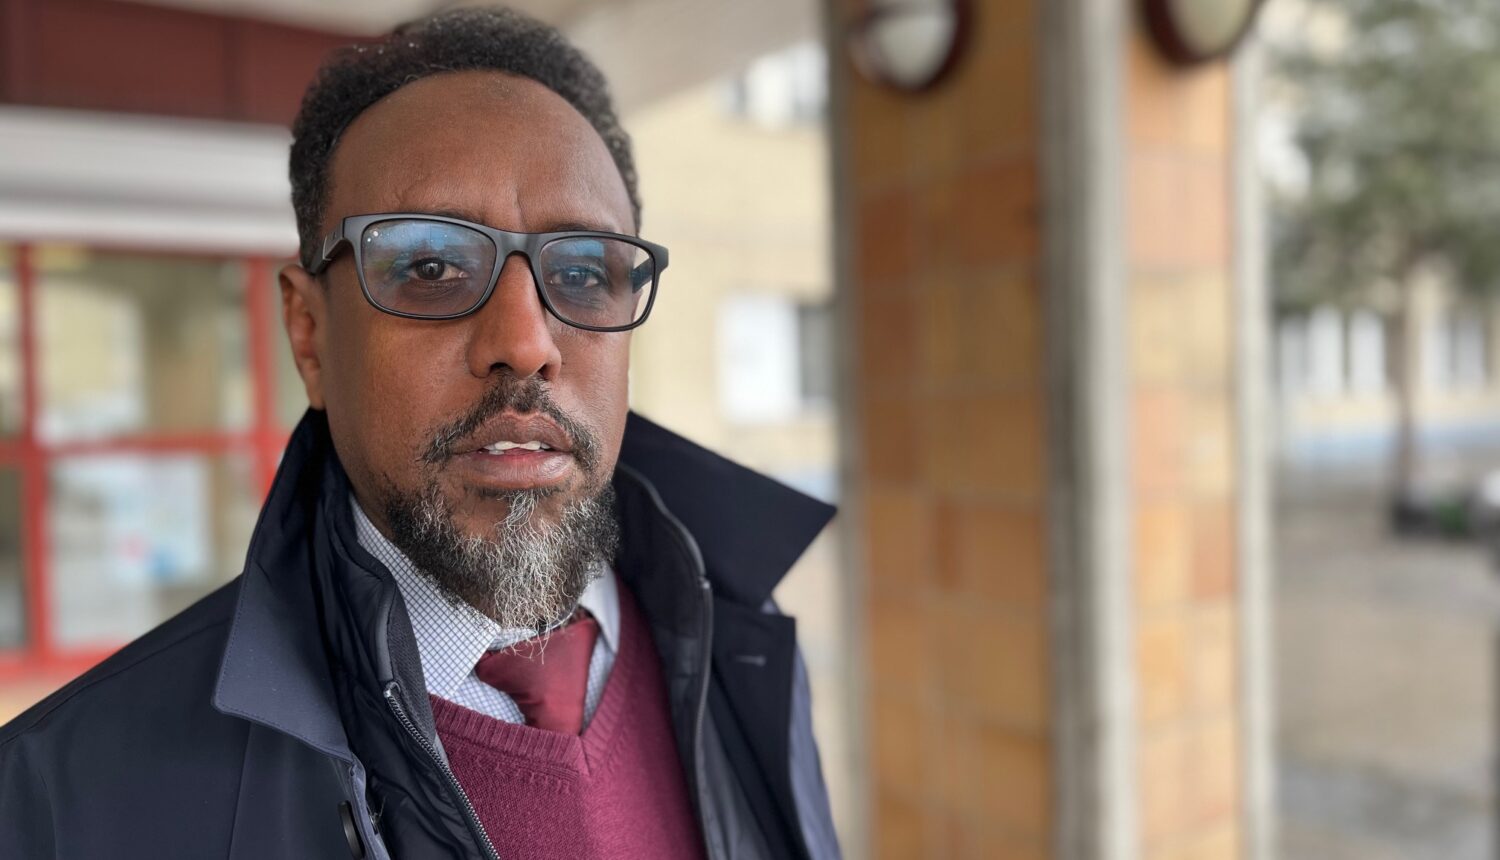 En somalisk man i 50-årsåldern, han bär solglasögon, elegant klädd.